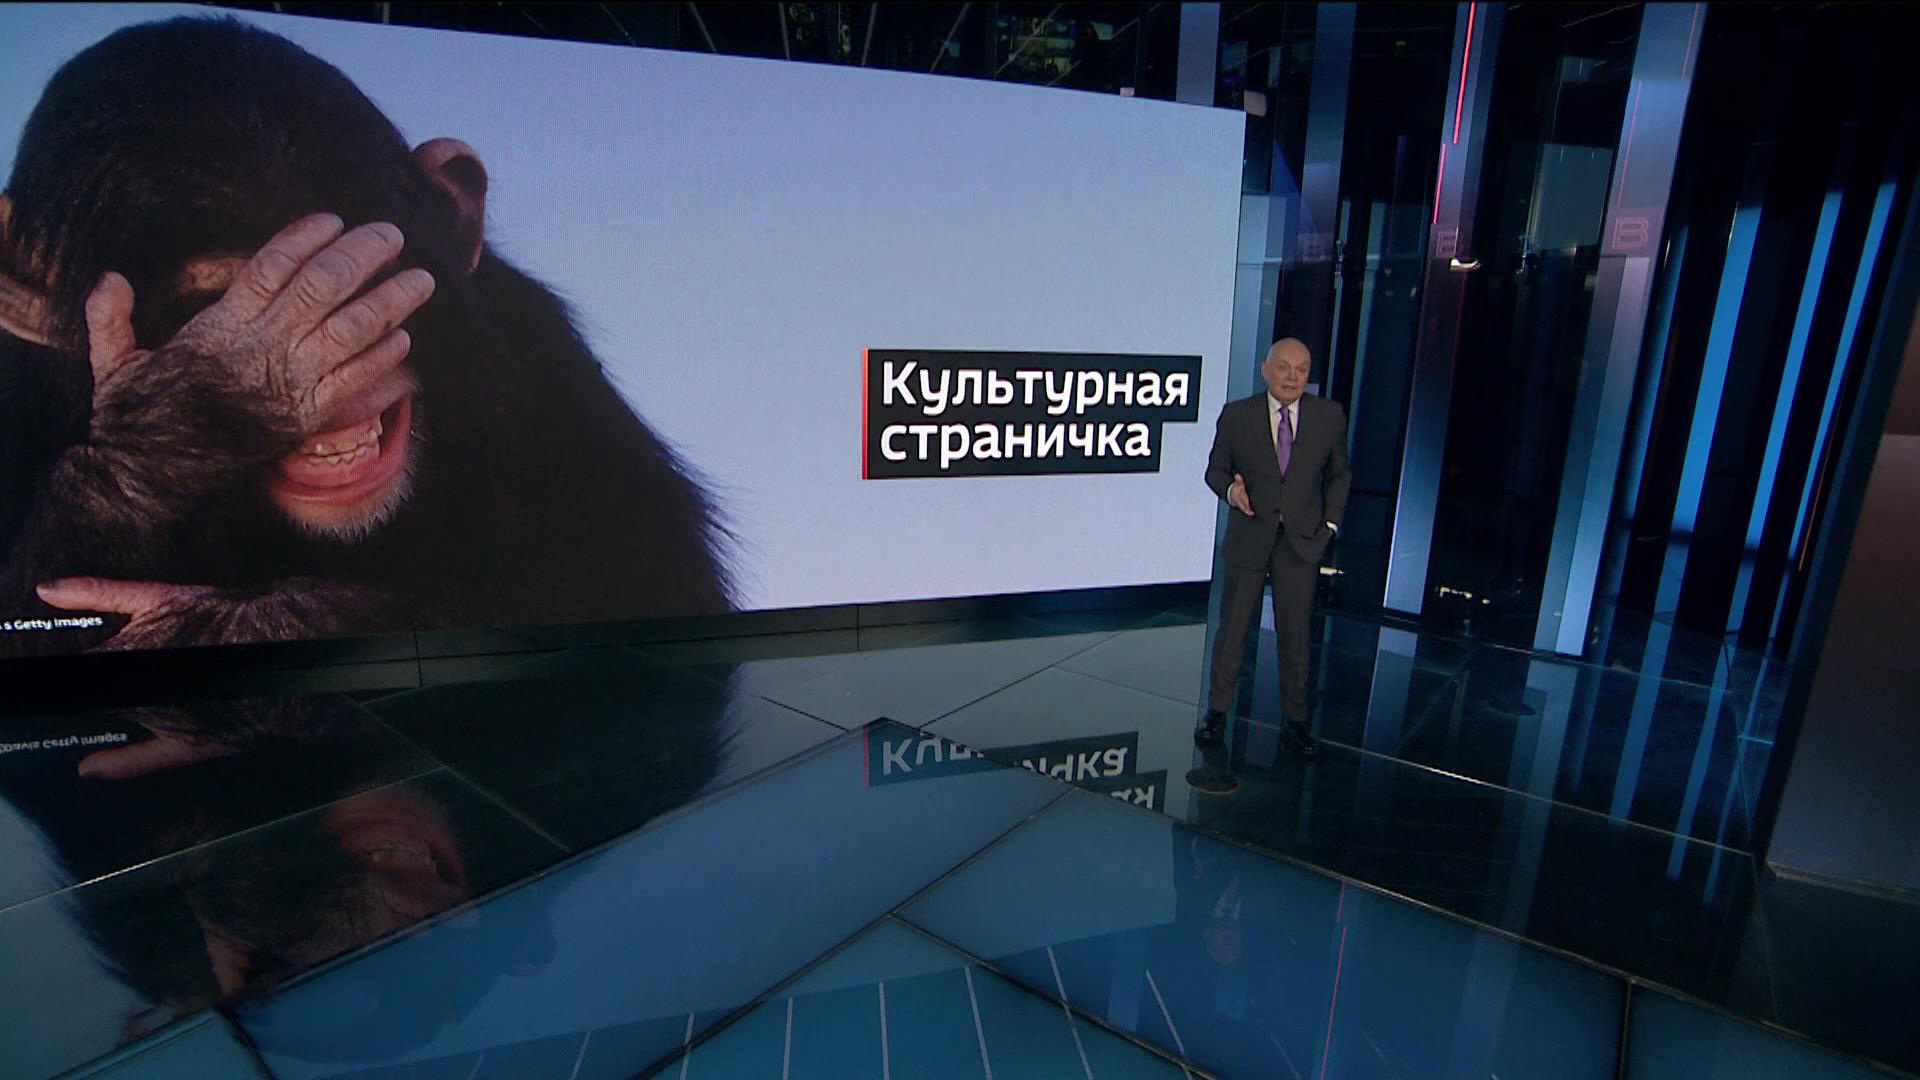 Киселев попытался найти подтверждения словам Путина об «издевательствах над детьми» на Западе. Не получилось